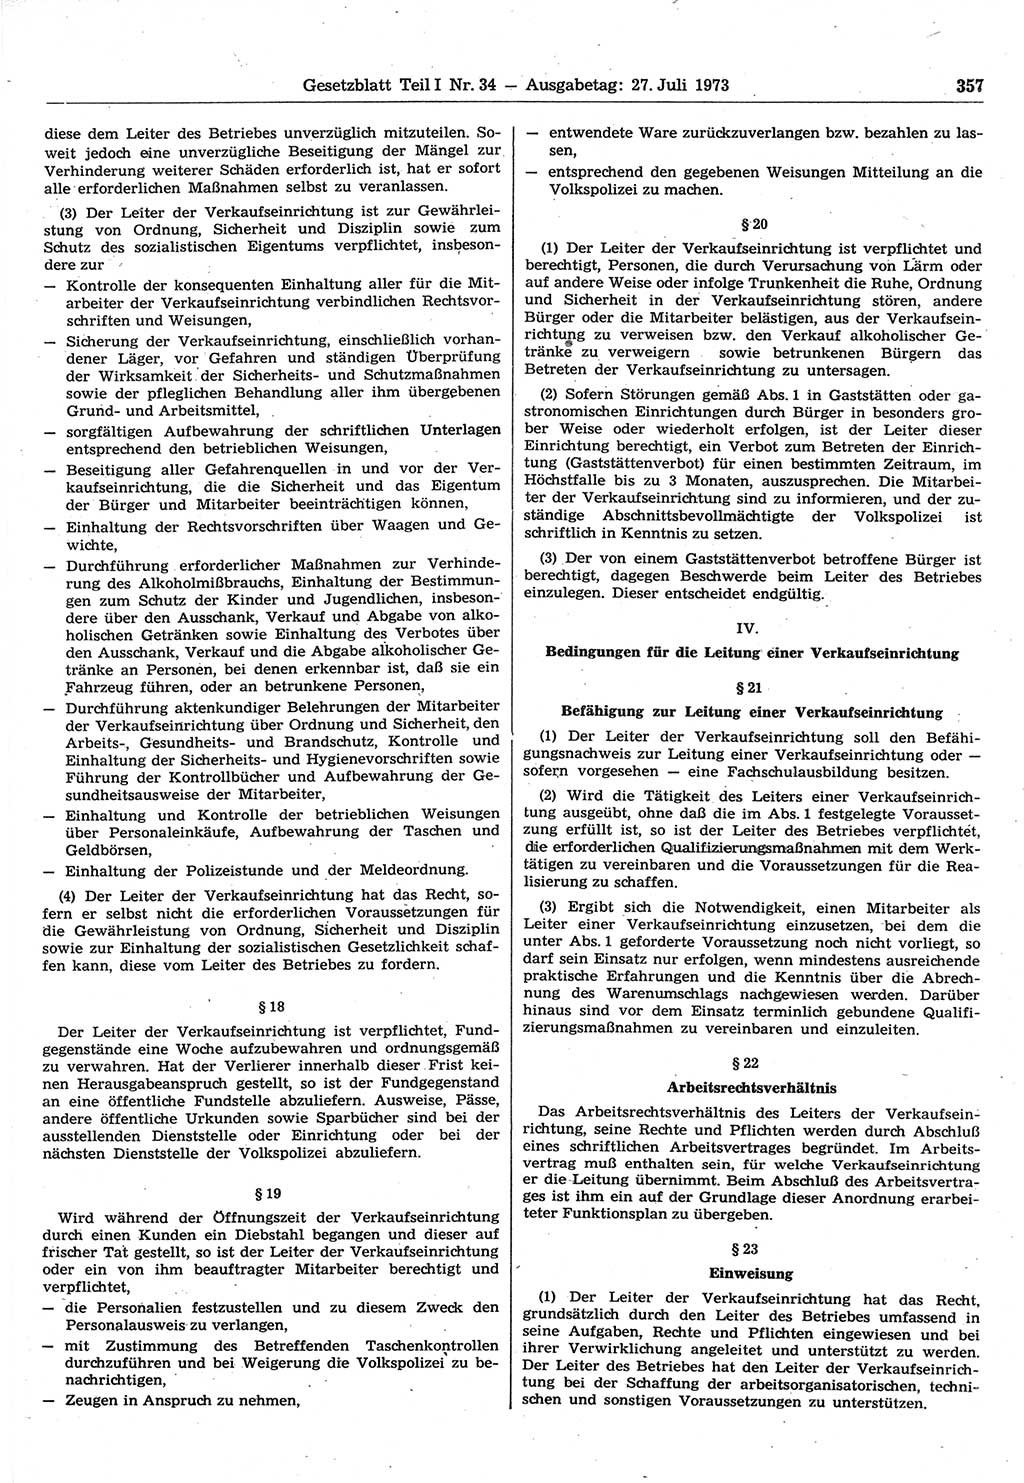 Gesetzblatt (GBl.) der Deutschen Demokratischen Republik (DDR) Teil Ⅰ 1973, Seite 357 (GBl. DDR Ⅰ 1973, S. 357)